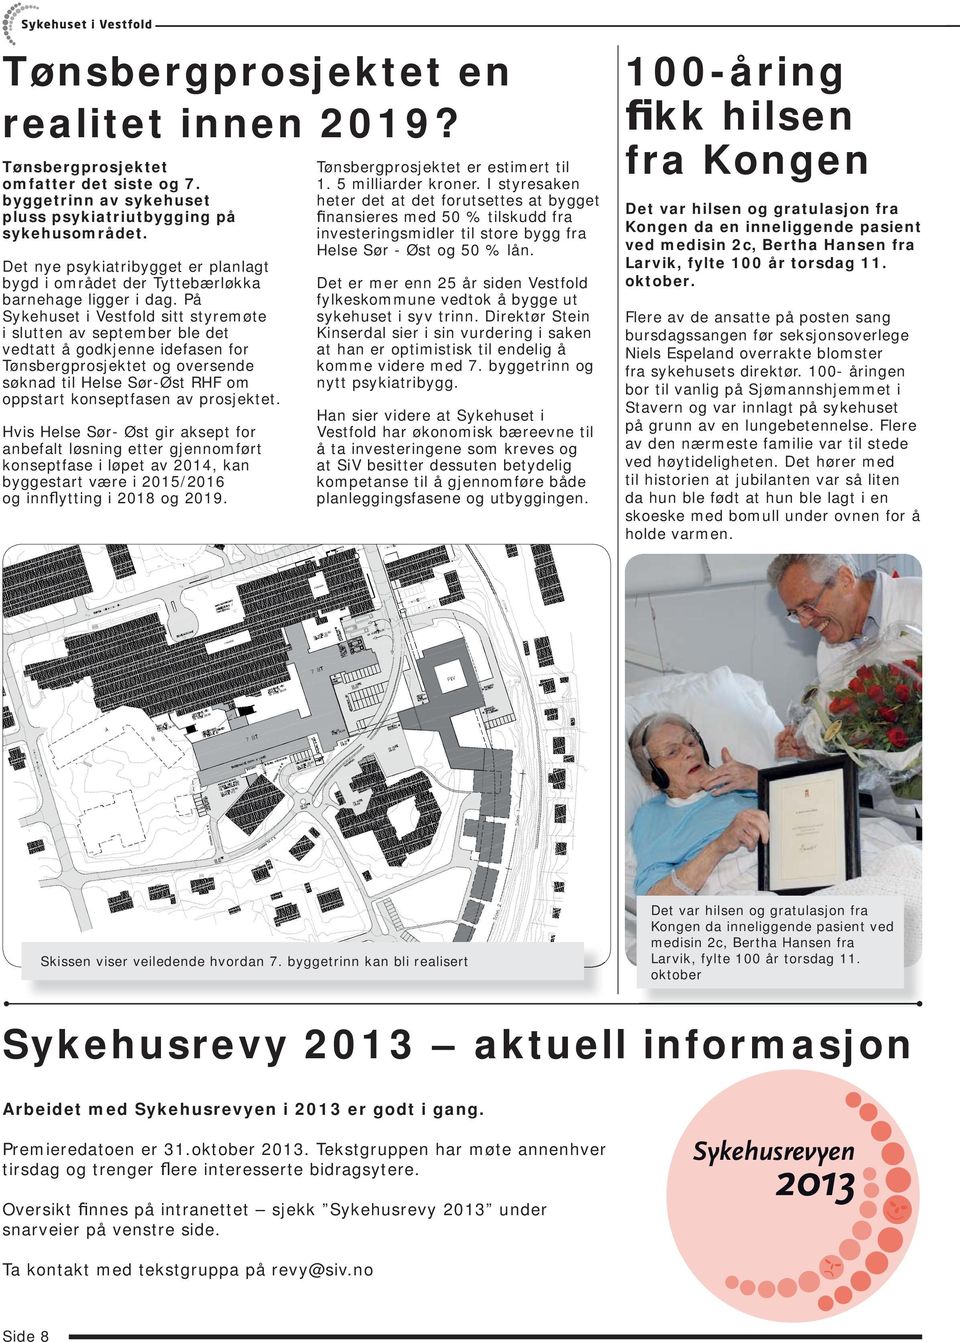 På Sykehuset i Vestfold sitt styremøte i slutten av september ble det vedtatt å godkjenne idefasen for Tønsbergprosjektet og oversende søknad til Helse Sør-Øst RHF om oppstart konseptfasen av